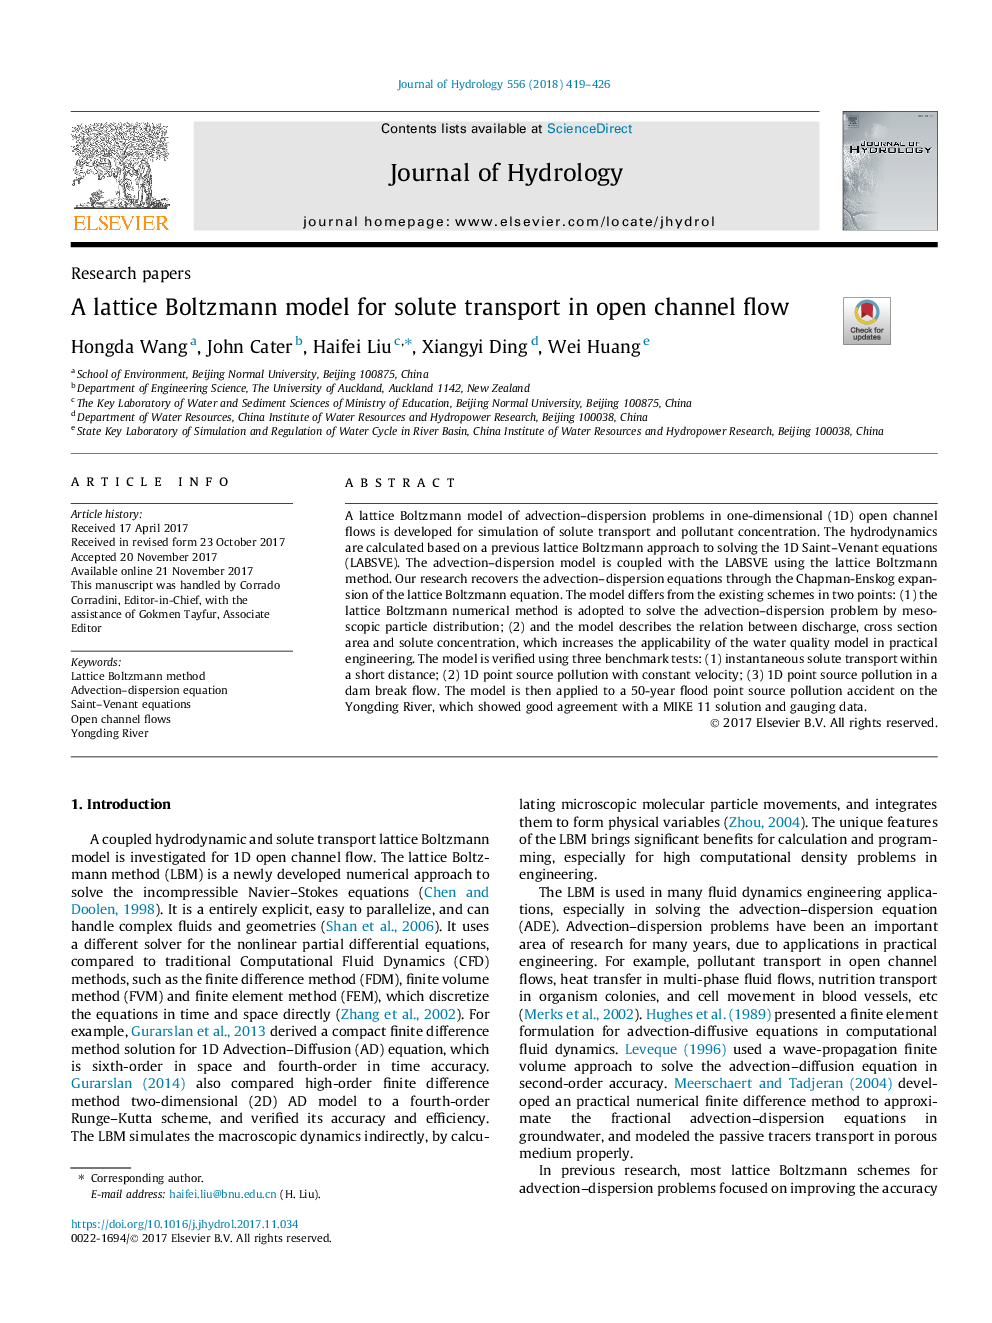 مدل شبکه بولتزمن برای انتقال حلال در جریان کانال 